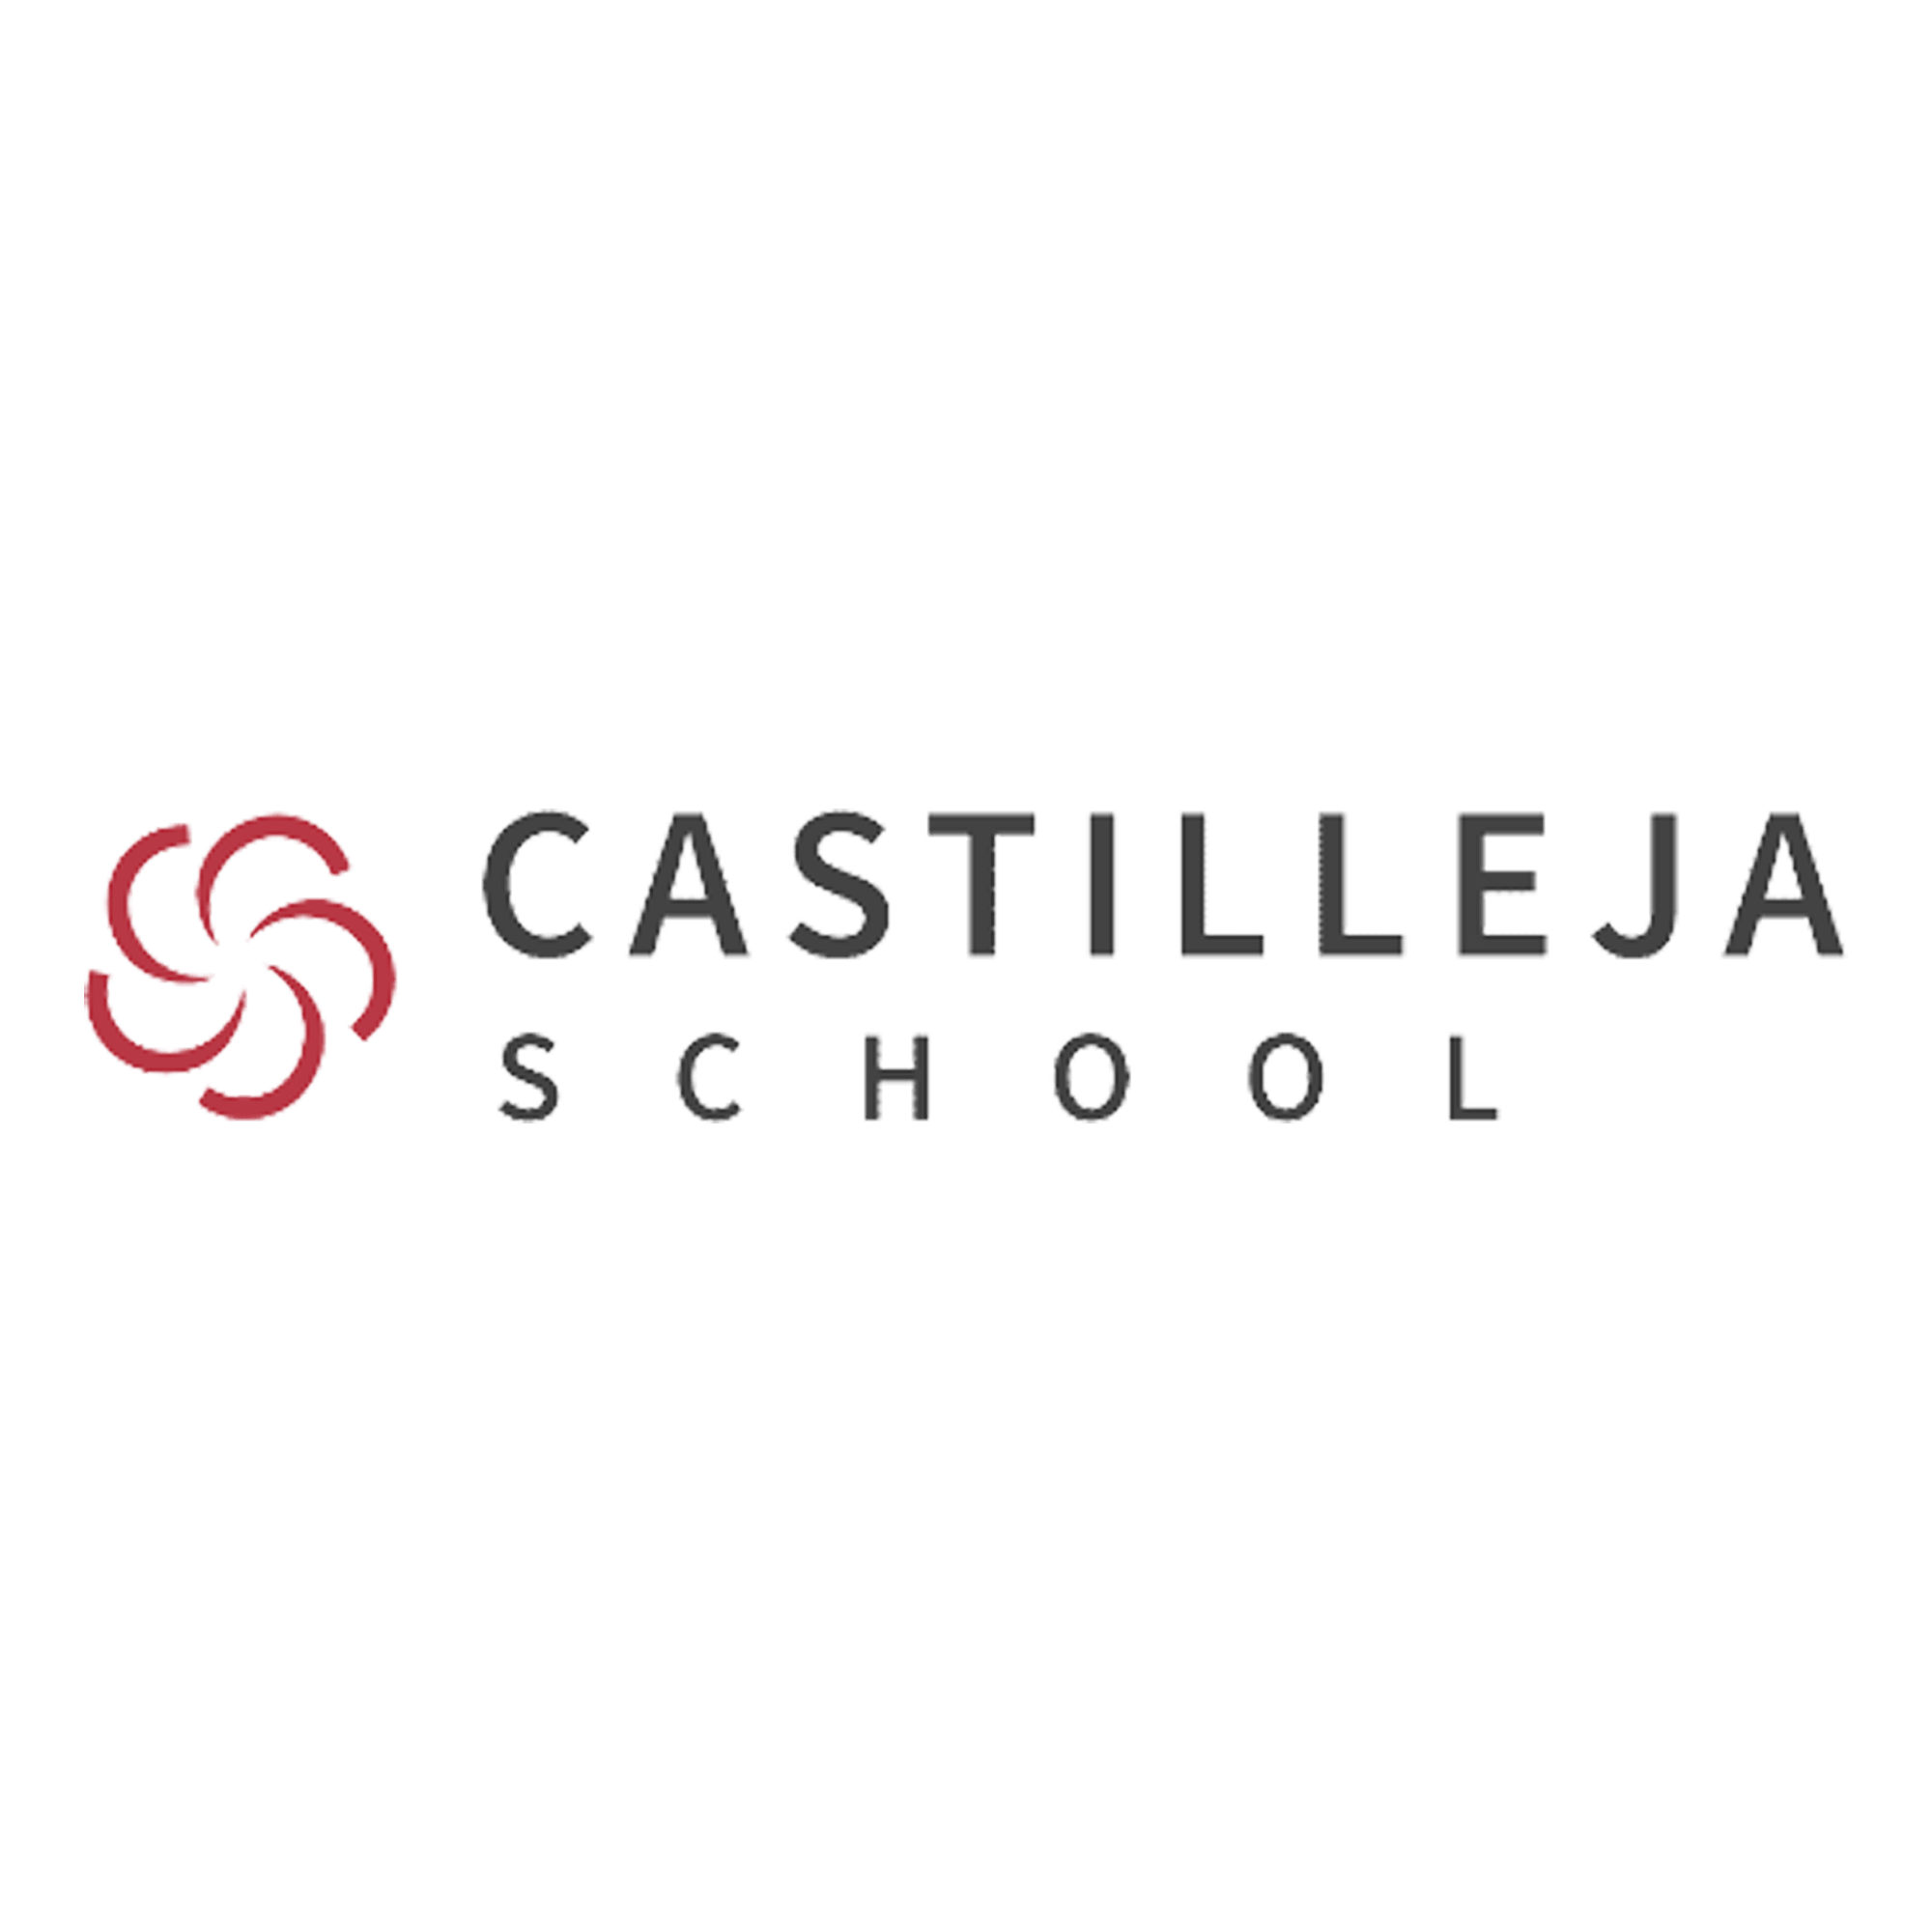 Castilleja_School.png